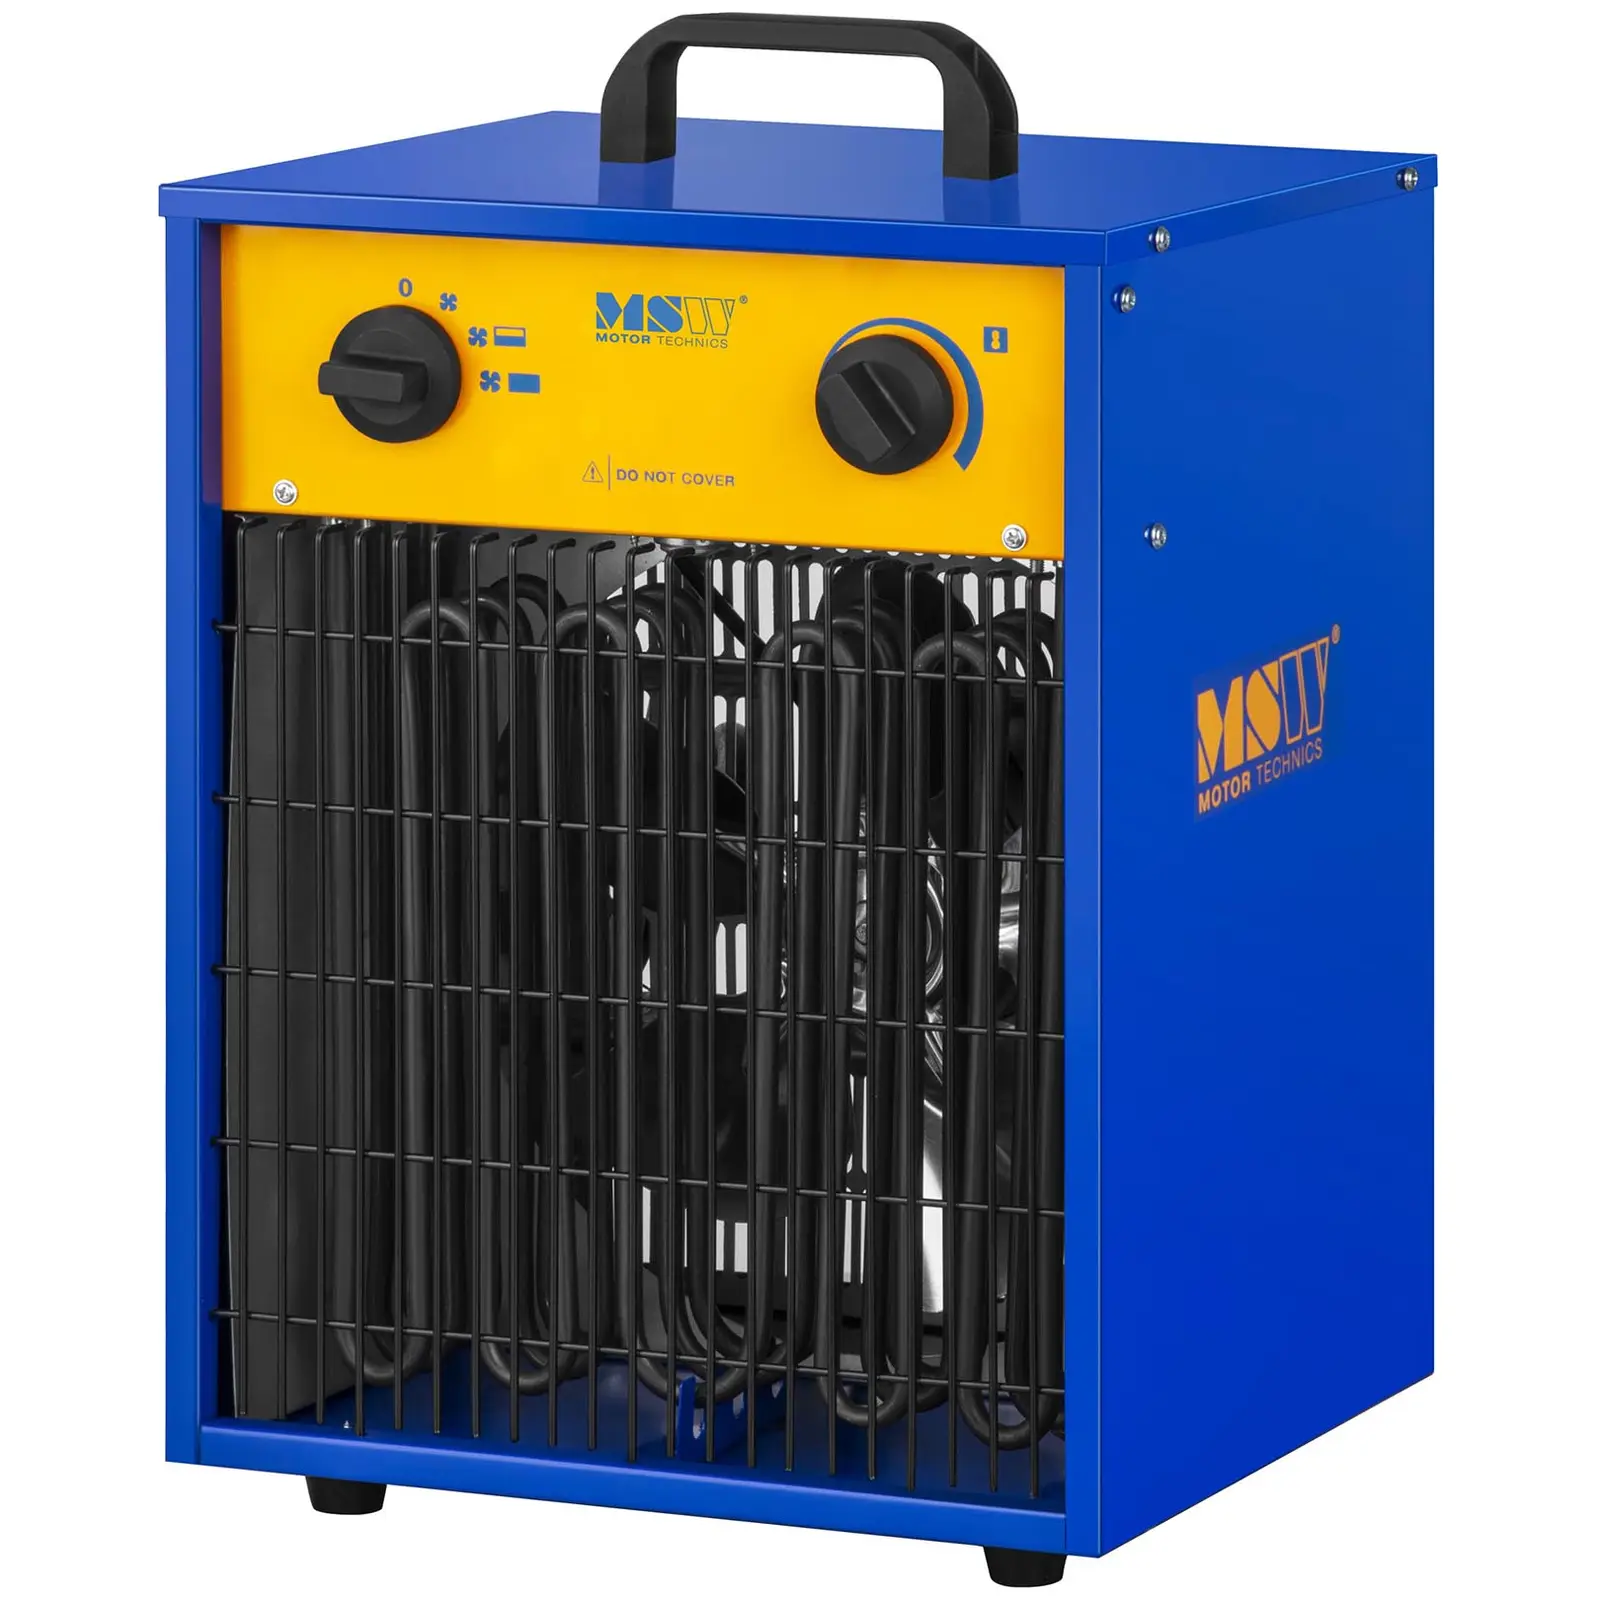 Industrijski električni grelnik s funkcijo hlajenja - 0 do 85 °C - 9.000 W